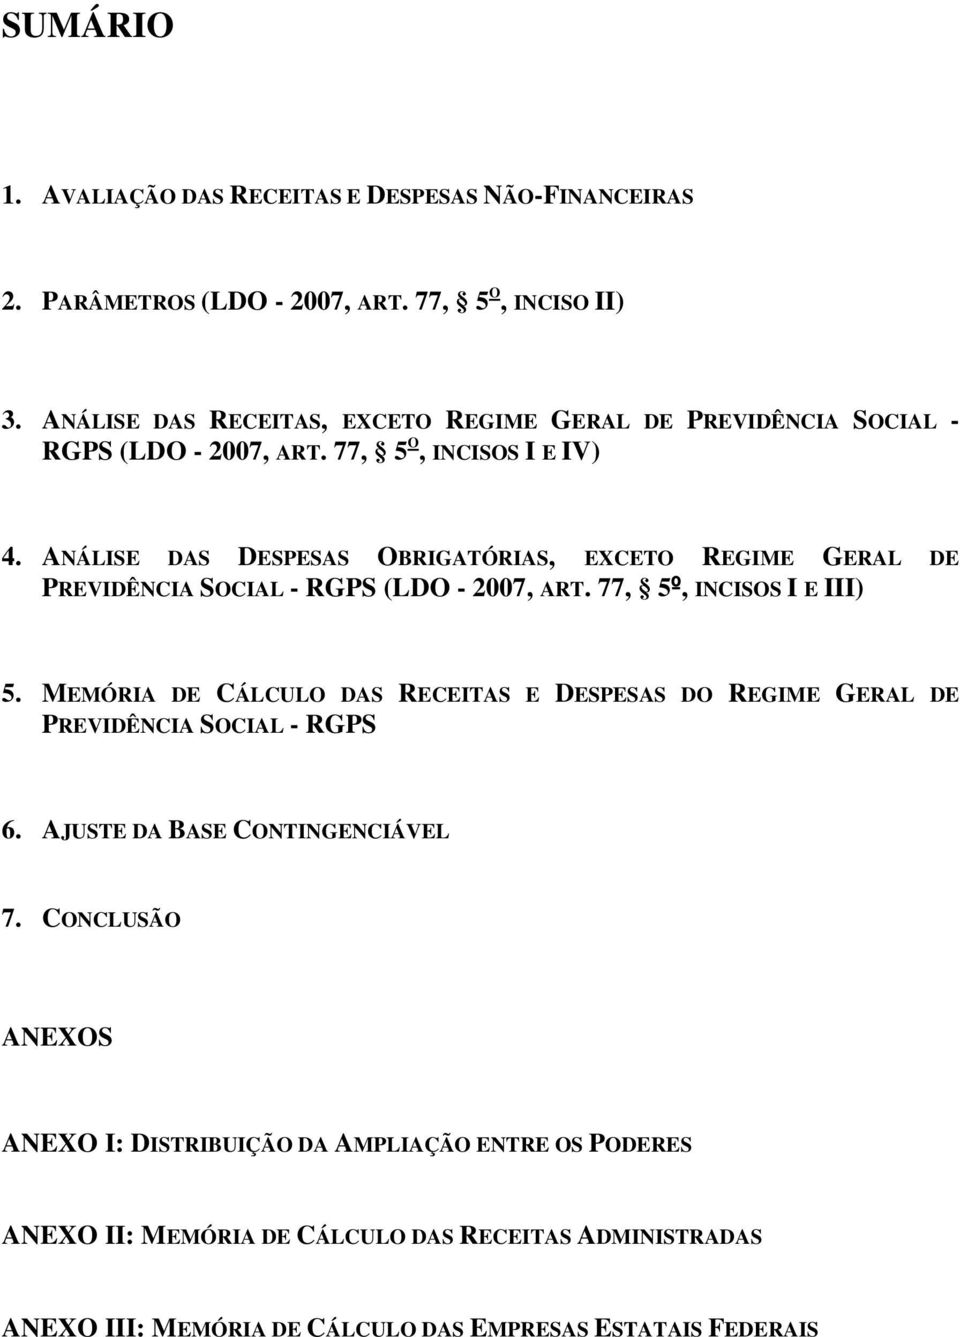 ANÁLISE DAS DESPESAS OBRIGATÓRIAS, EXCETO REGIME GERAL DE PREVIDÊNCIA SOCIAL - RGPS (LDO - 2007, ART. 77, 5º, INCISOS I E III) 5.